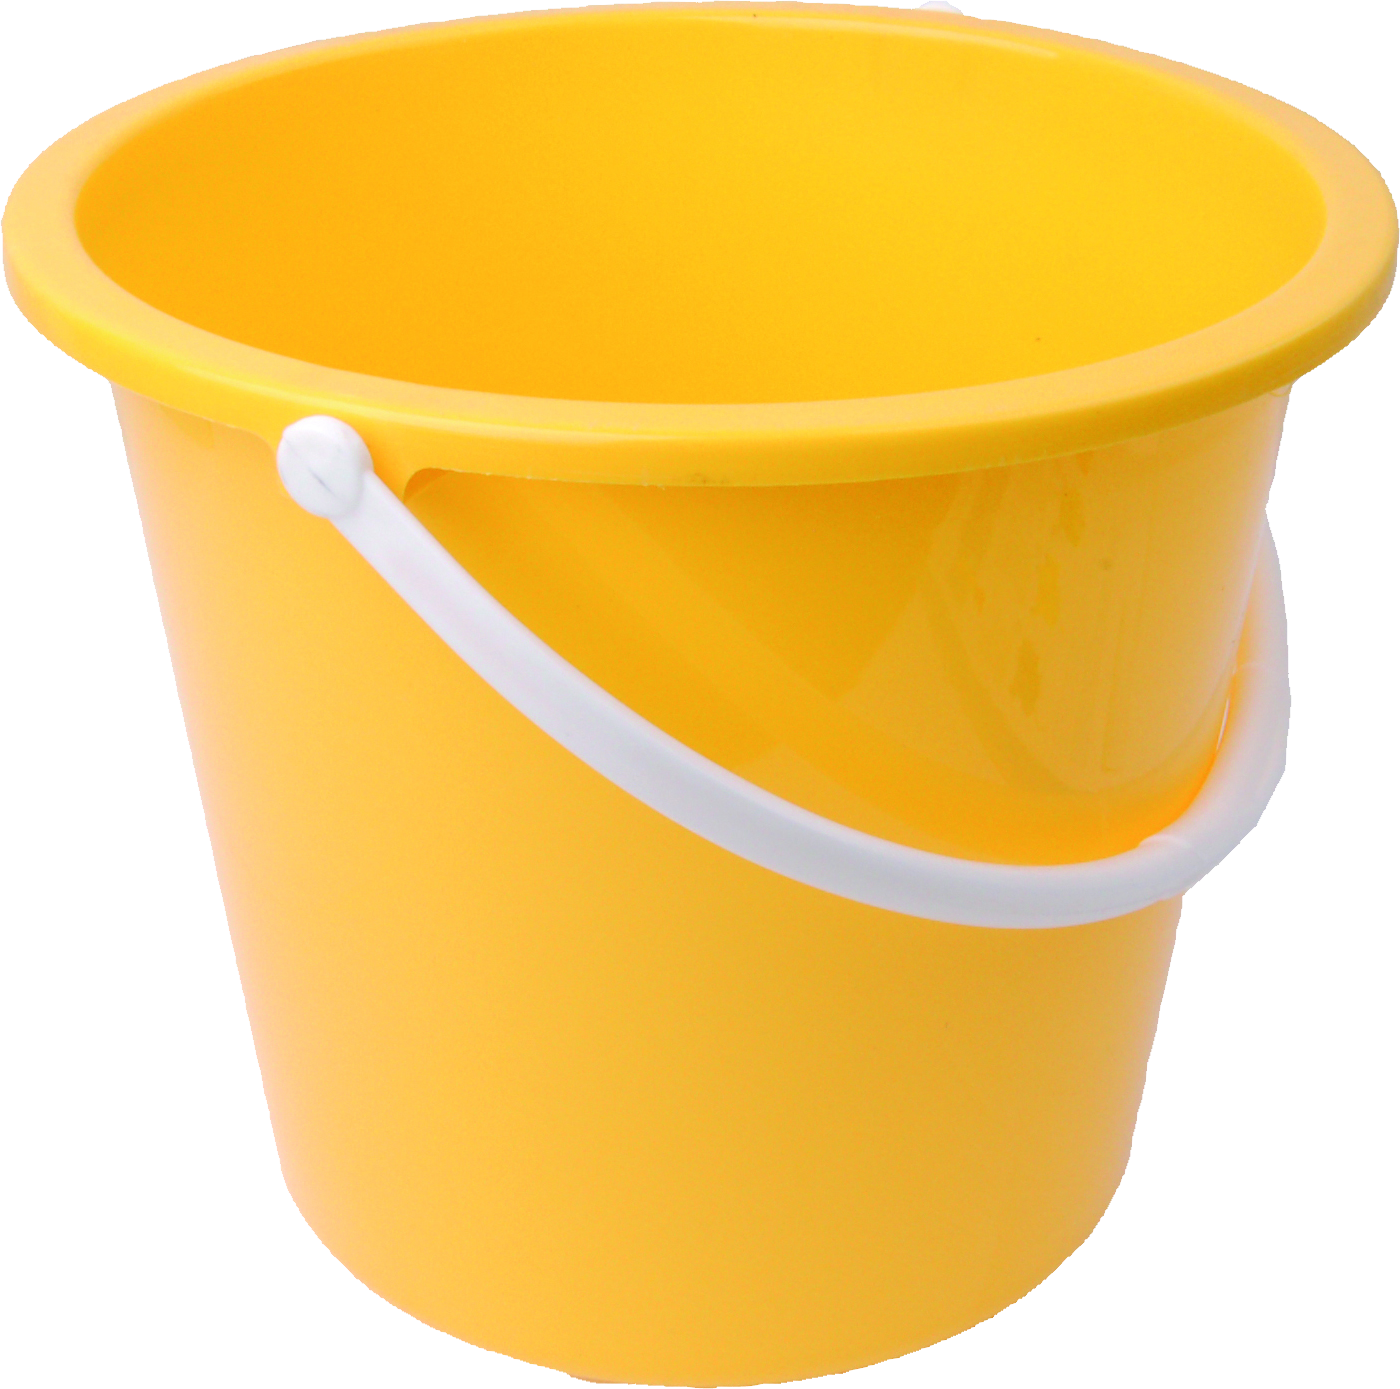 Yellow Plastic Bucketwith Handle PNG